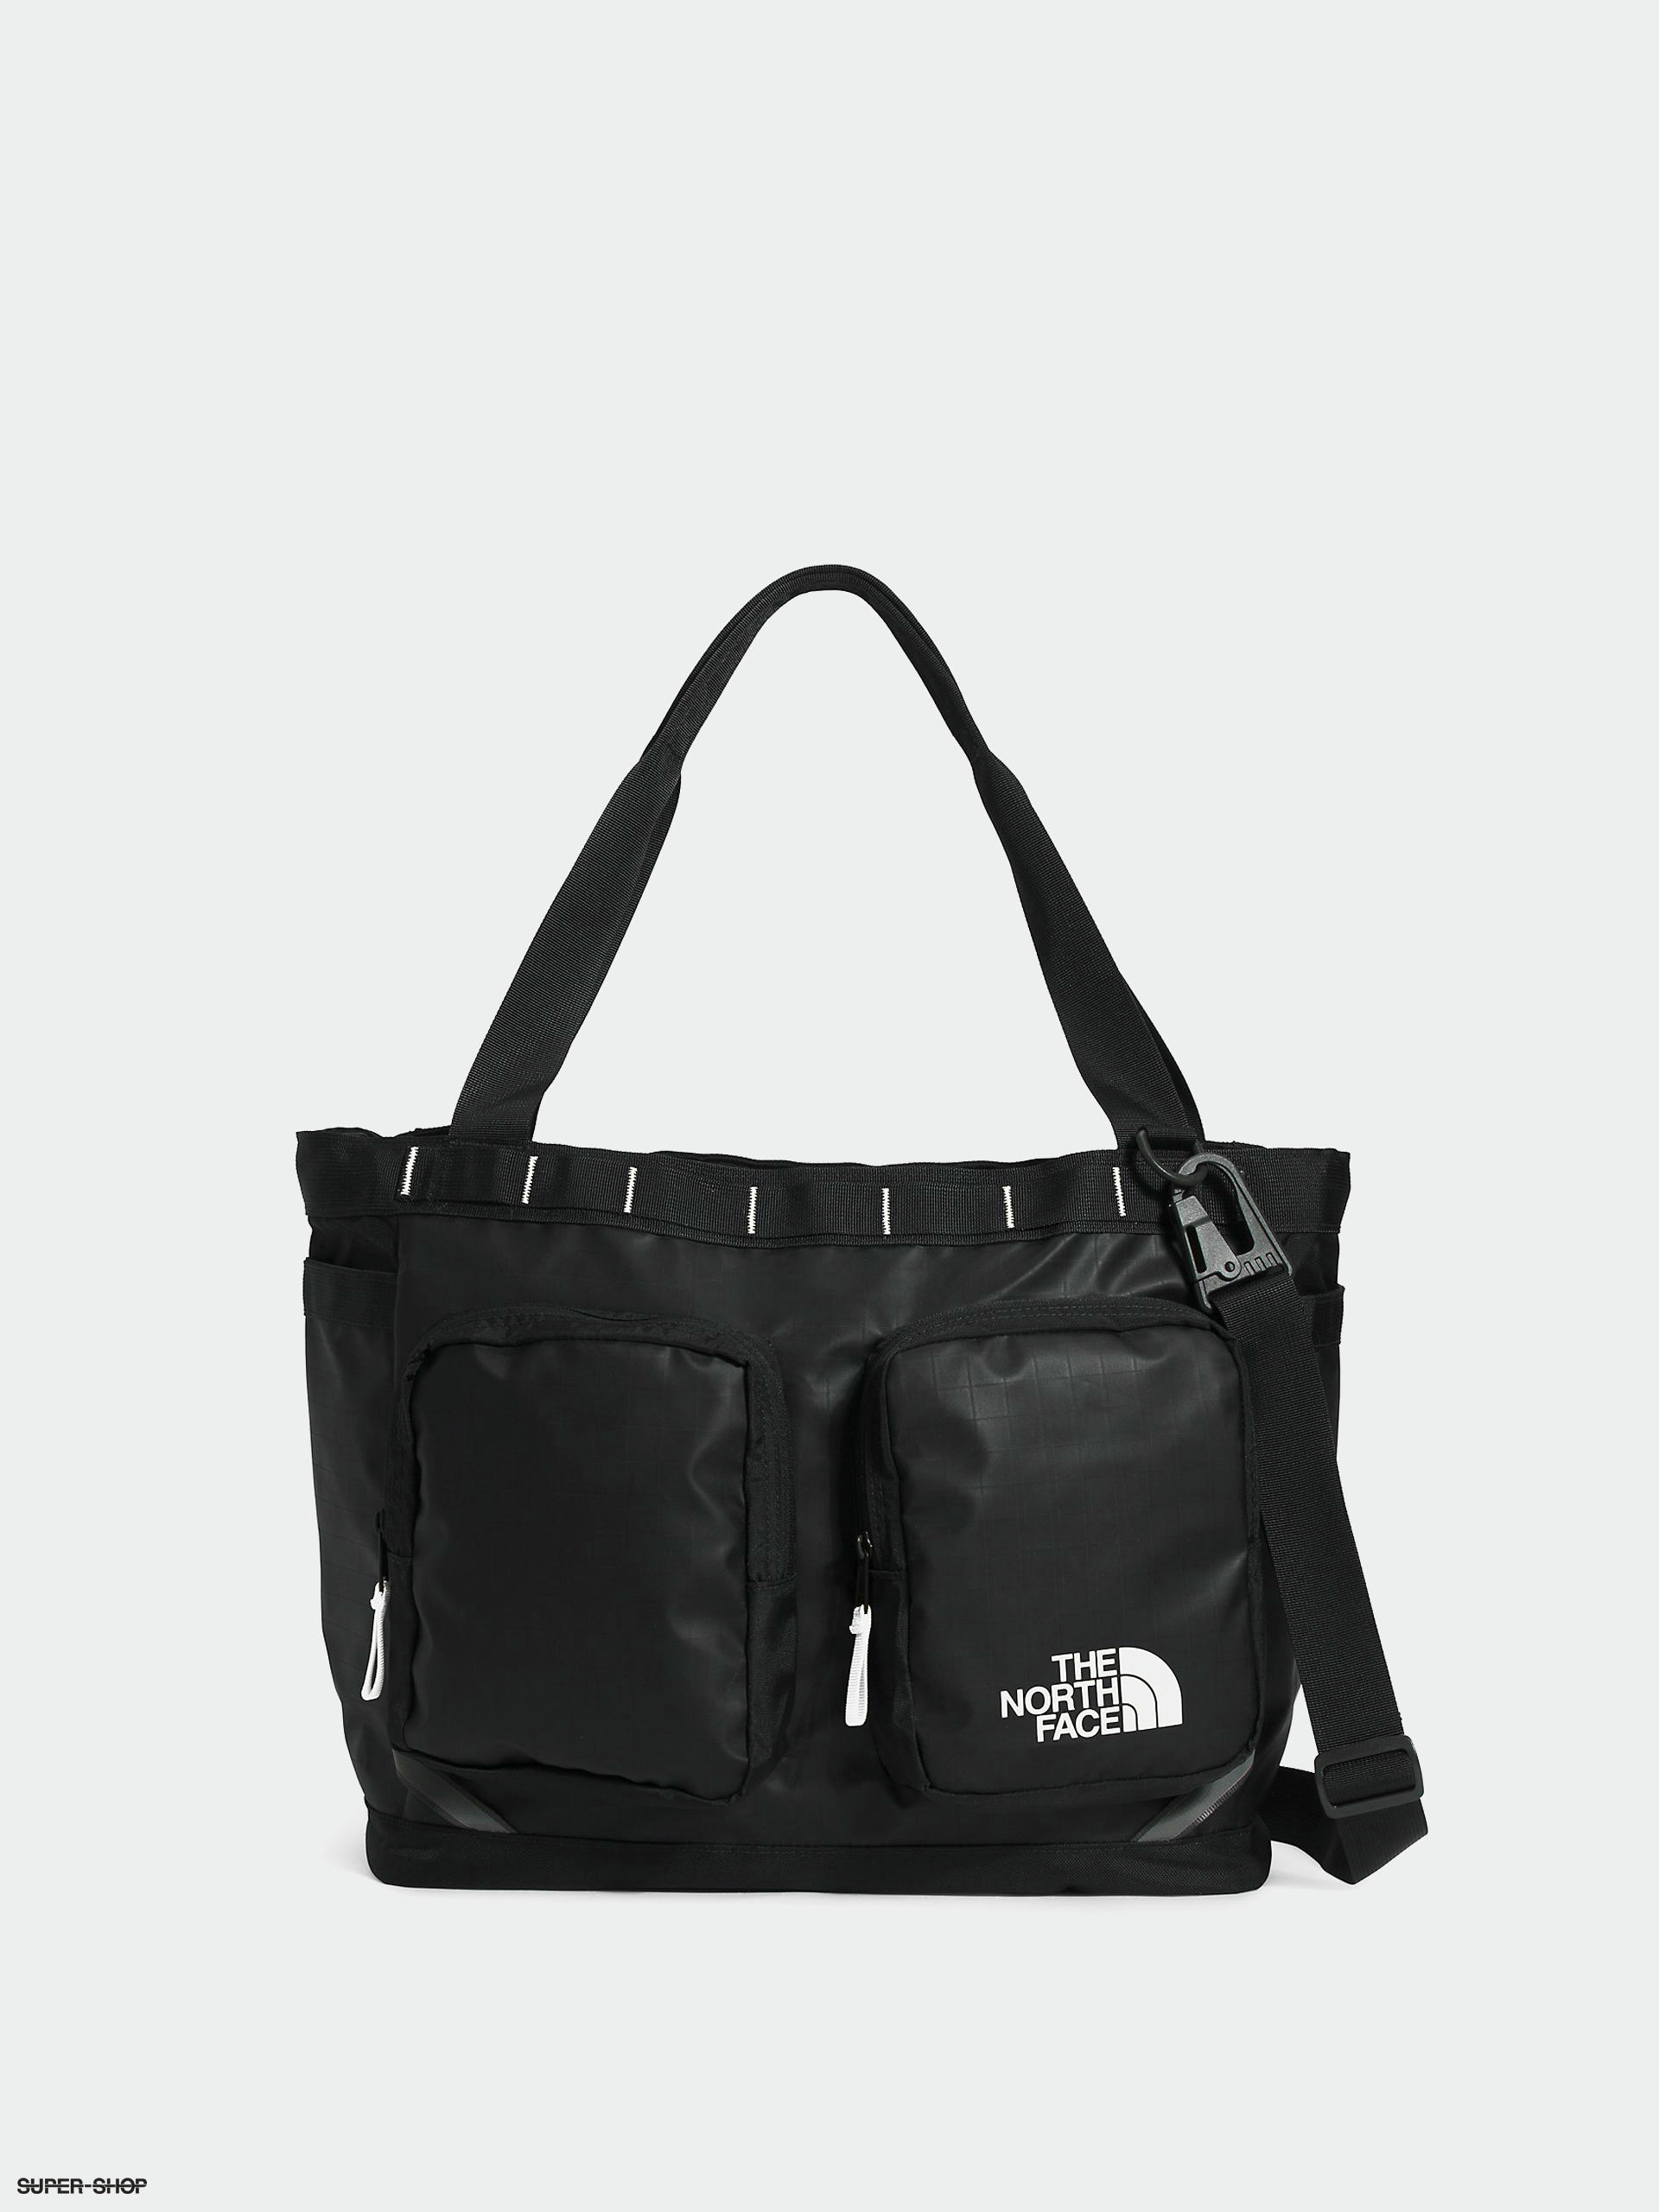 My North Face Borealis bag : r/BuyItForLife